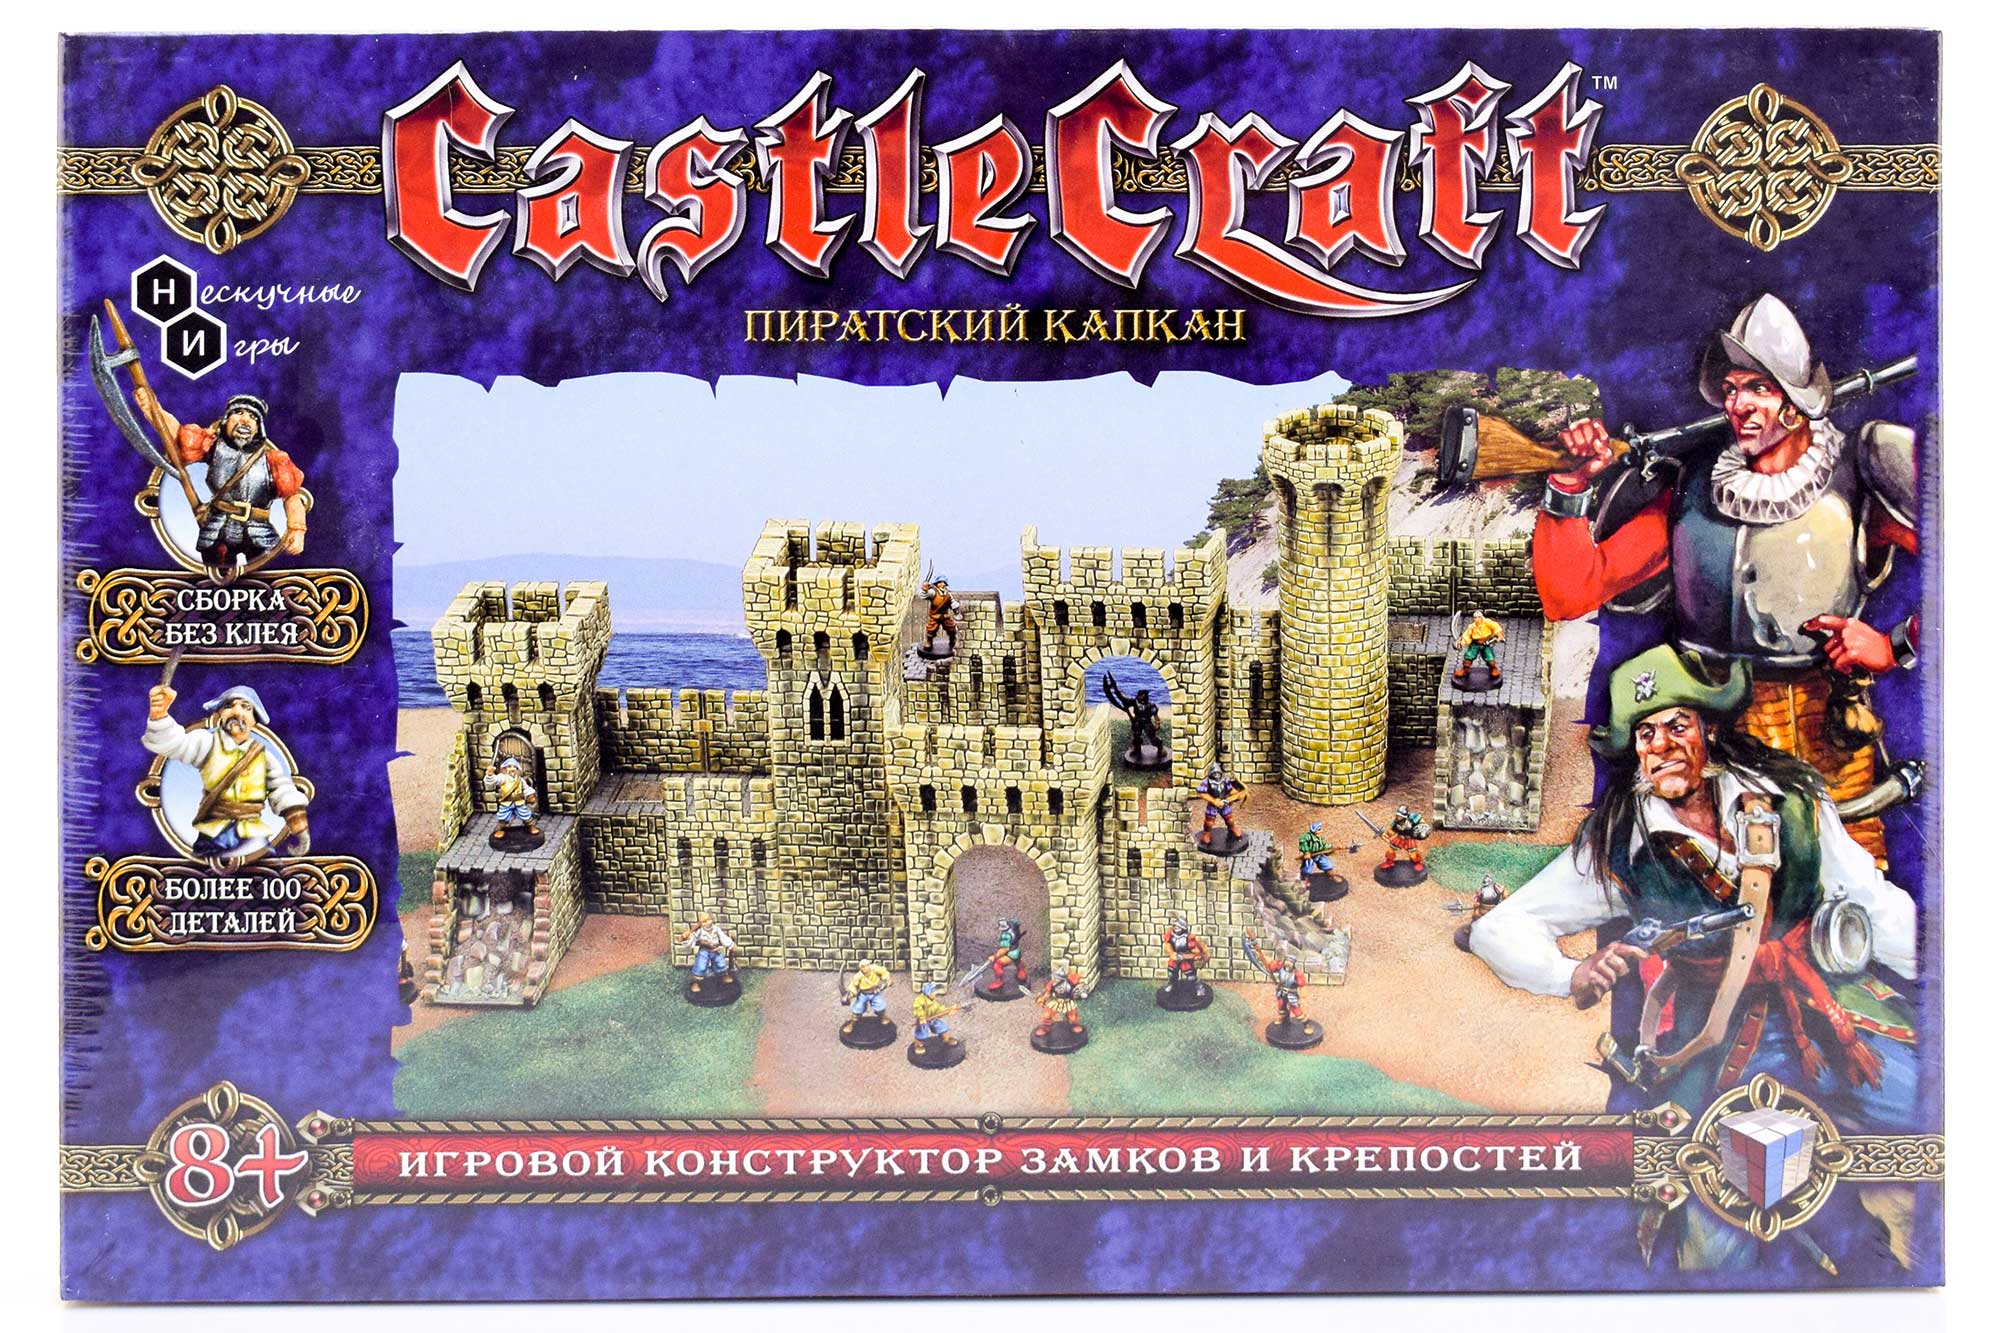 Набор Технолог Castlecraft Пиратский капкан крепость арт. 00345 /4 набор технолог castlecraft рыцарский замок крепость арт 00972 6